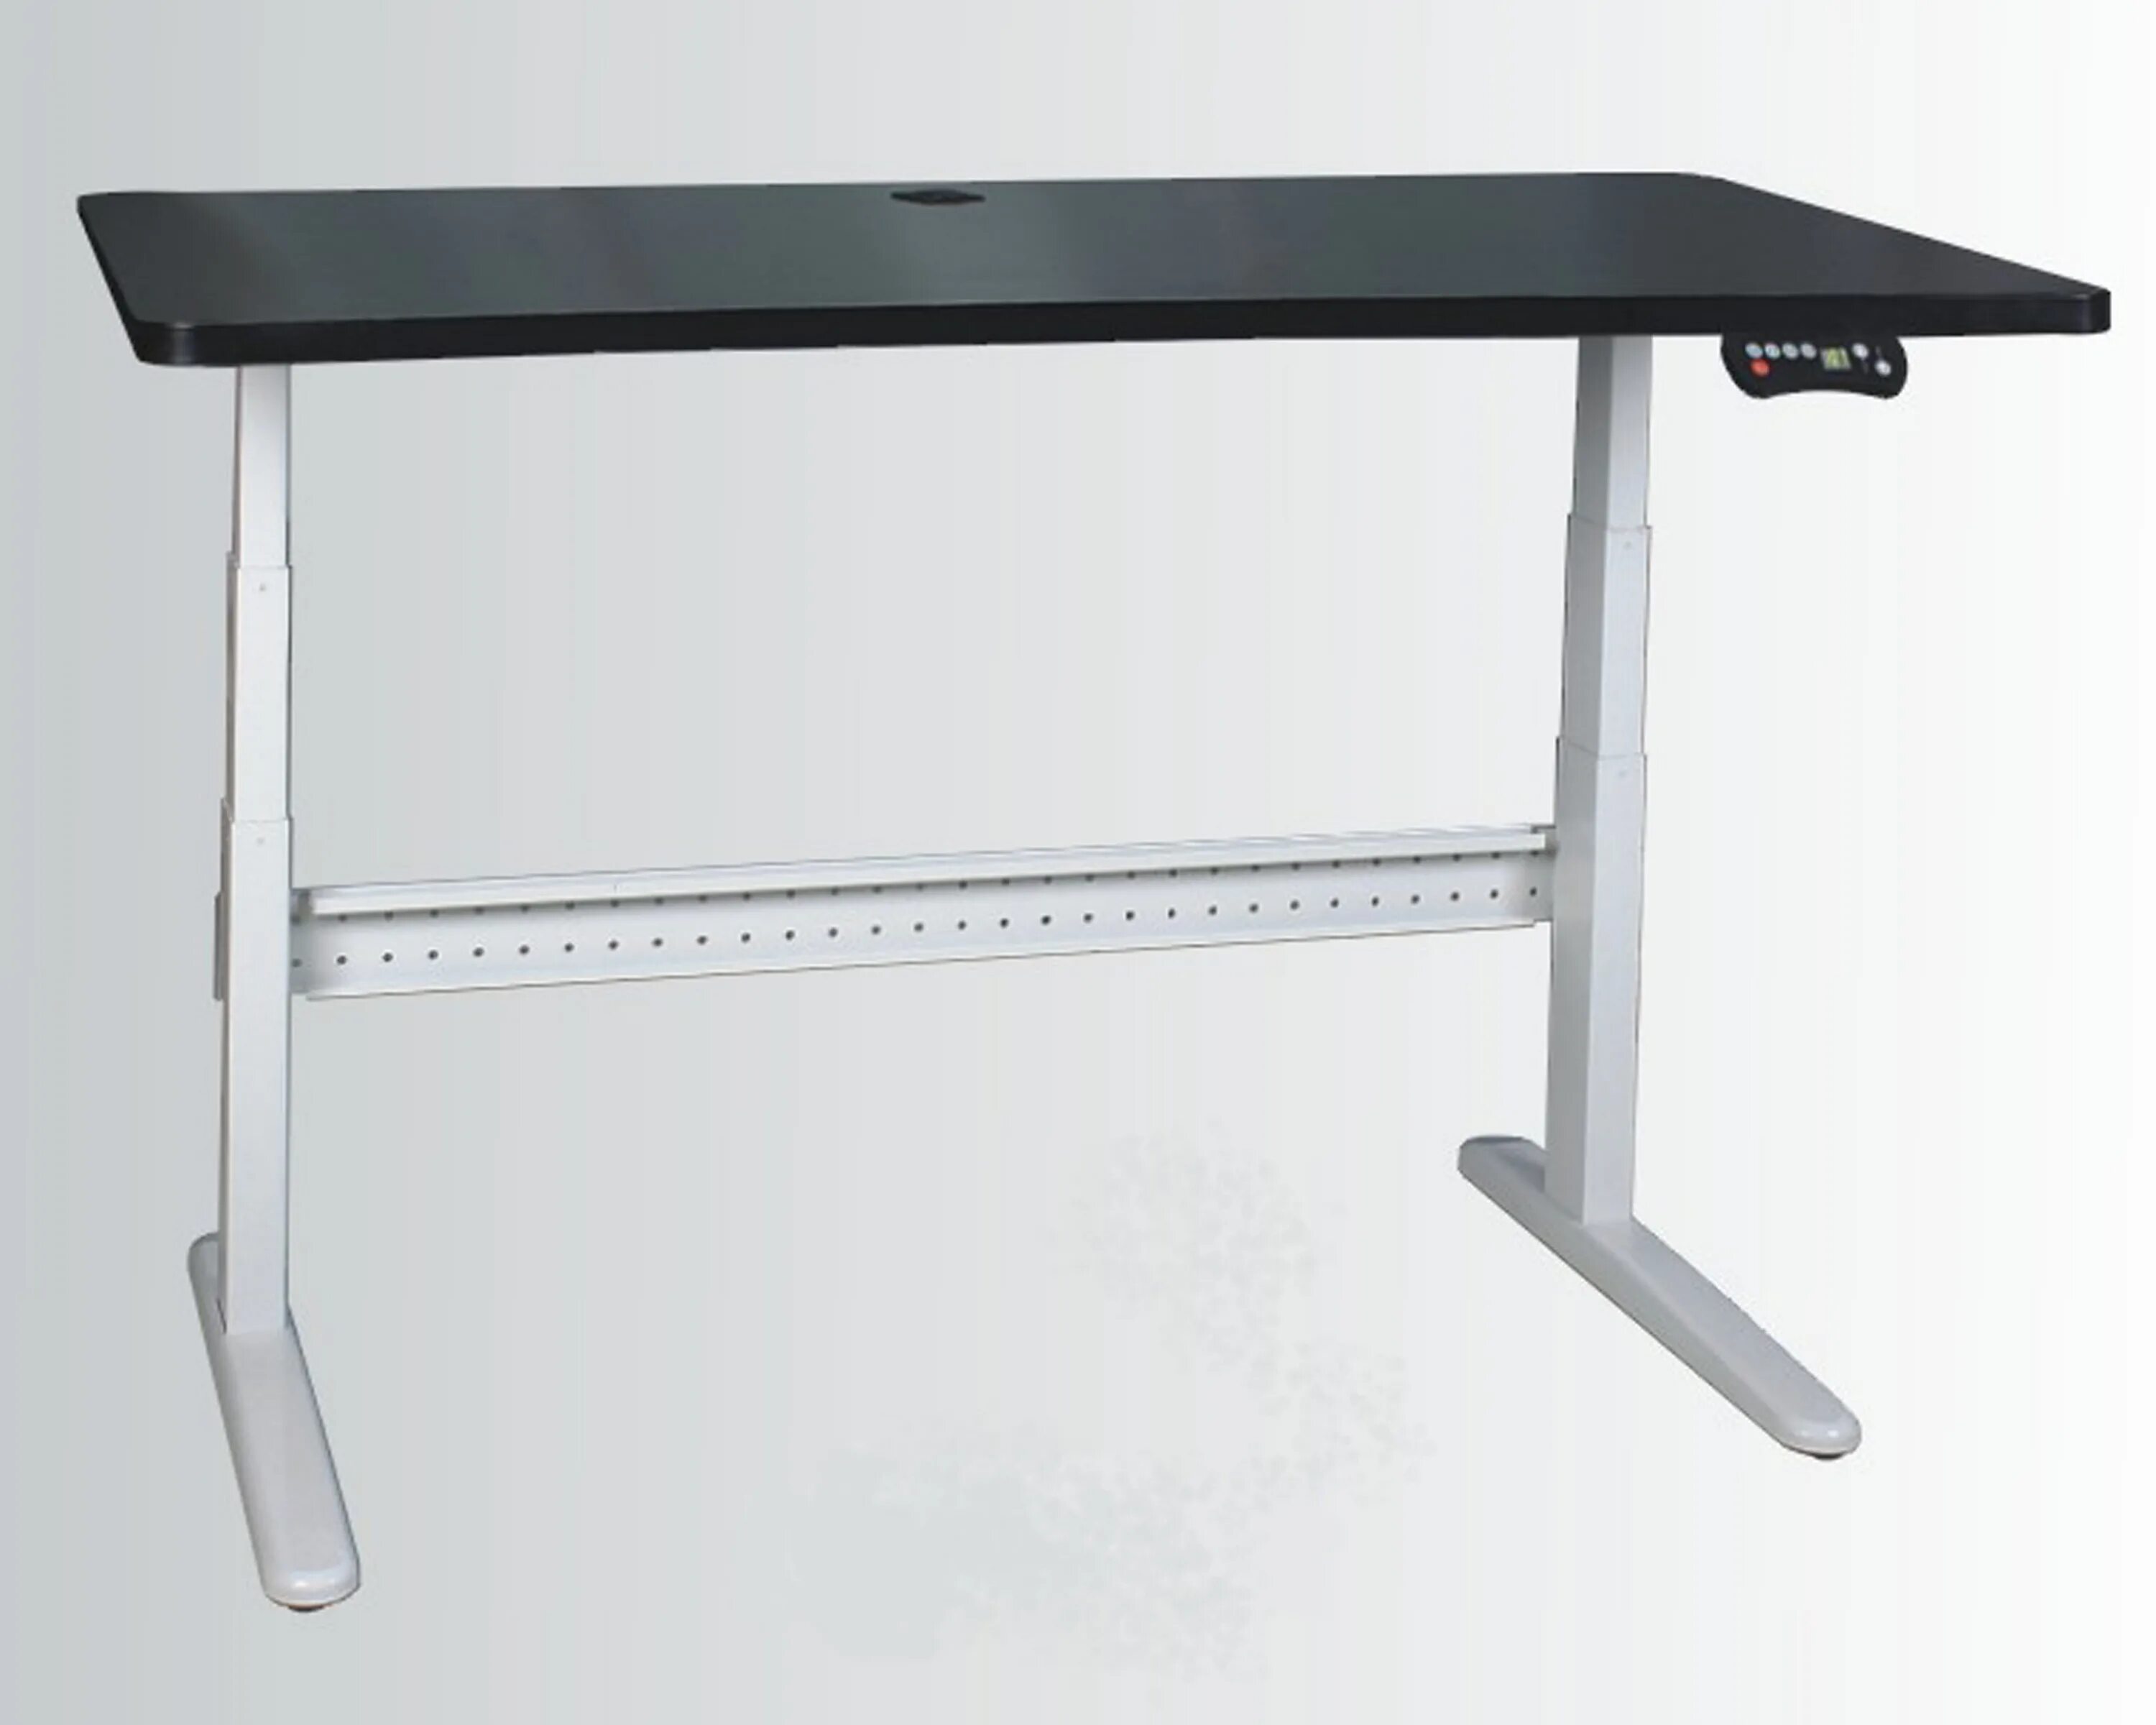 Zamm стол регулируемый. Стол регулируемый по высоте Ямагучи. Ikea стол регулируемый по высоте. Стол икеа который регулируется по высоте.